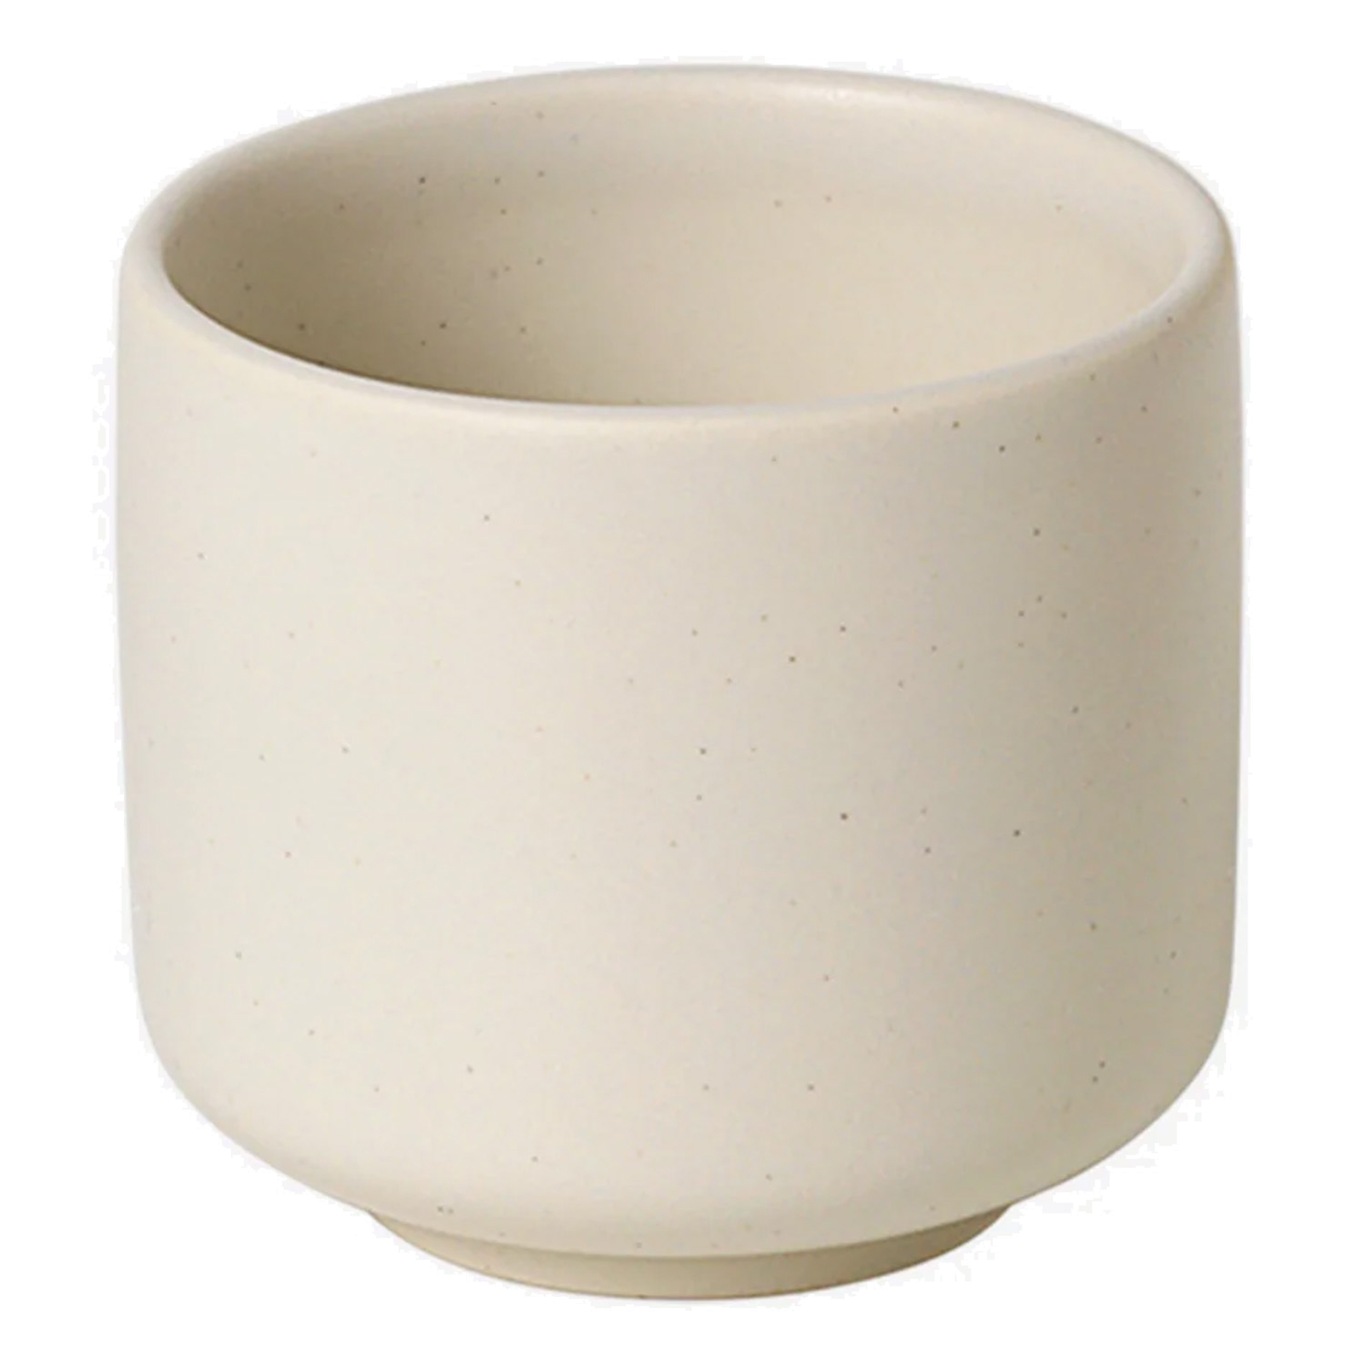 Ceramic Pisu Cup 7.5 cm, Vanilla White